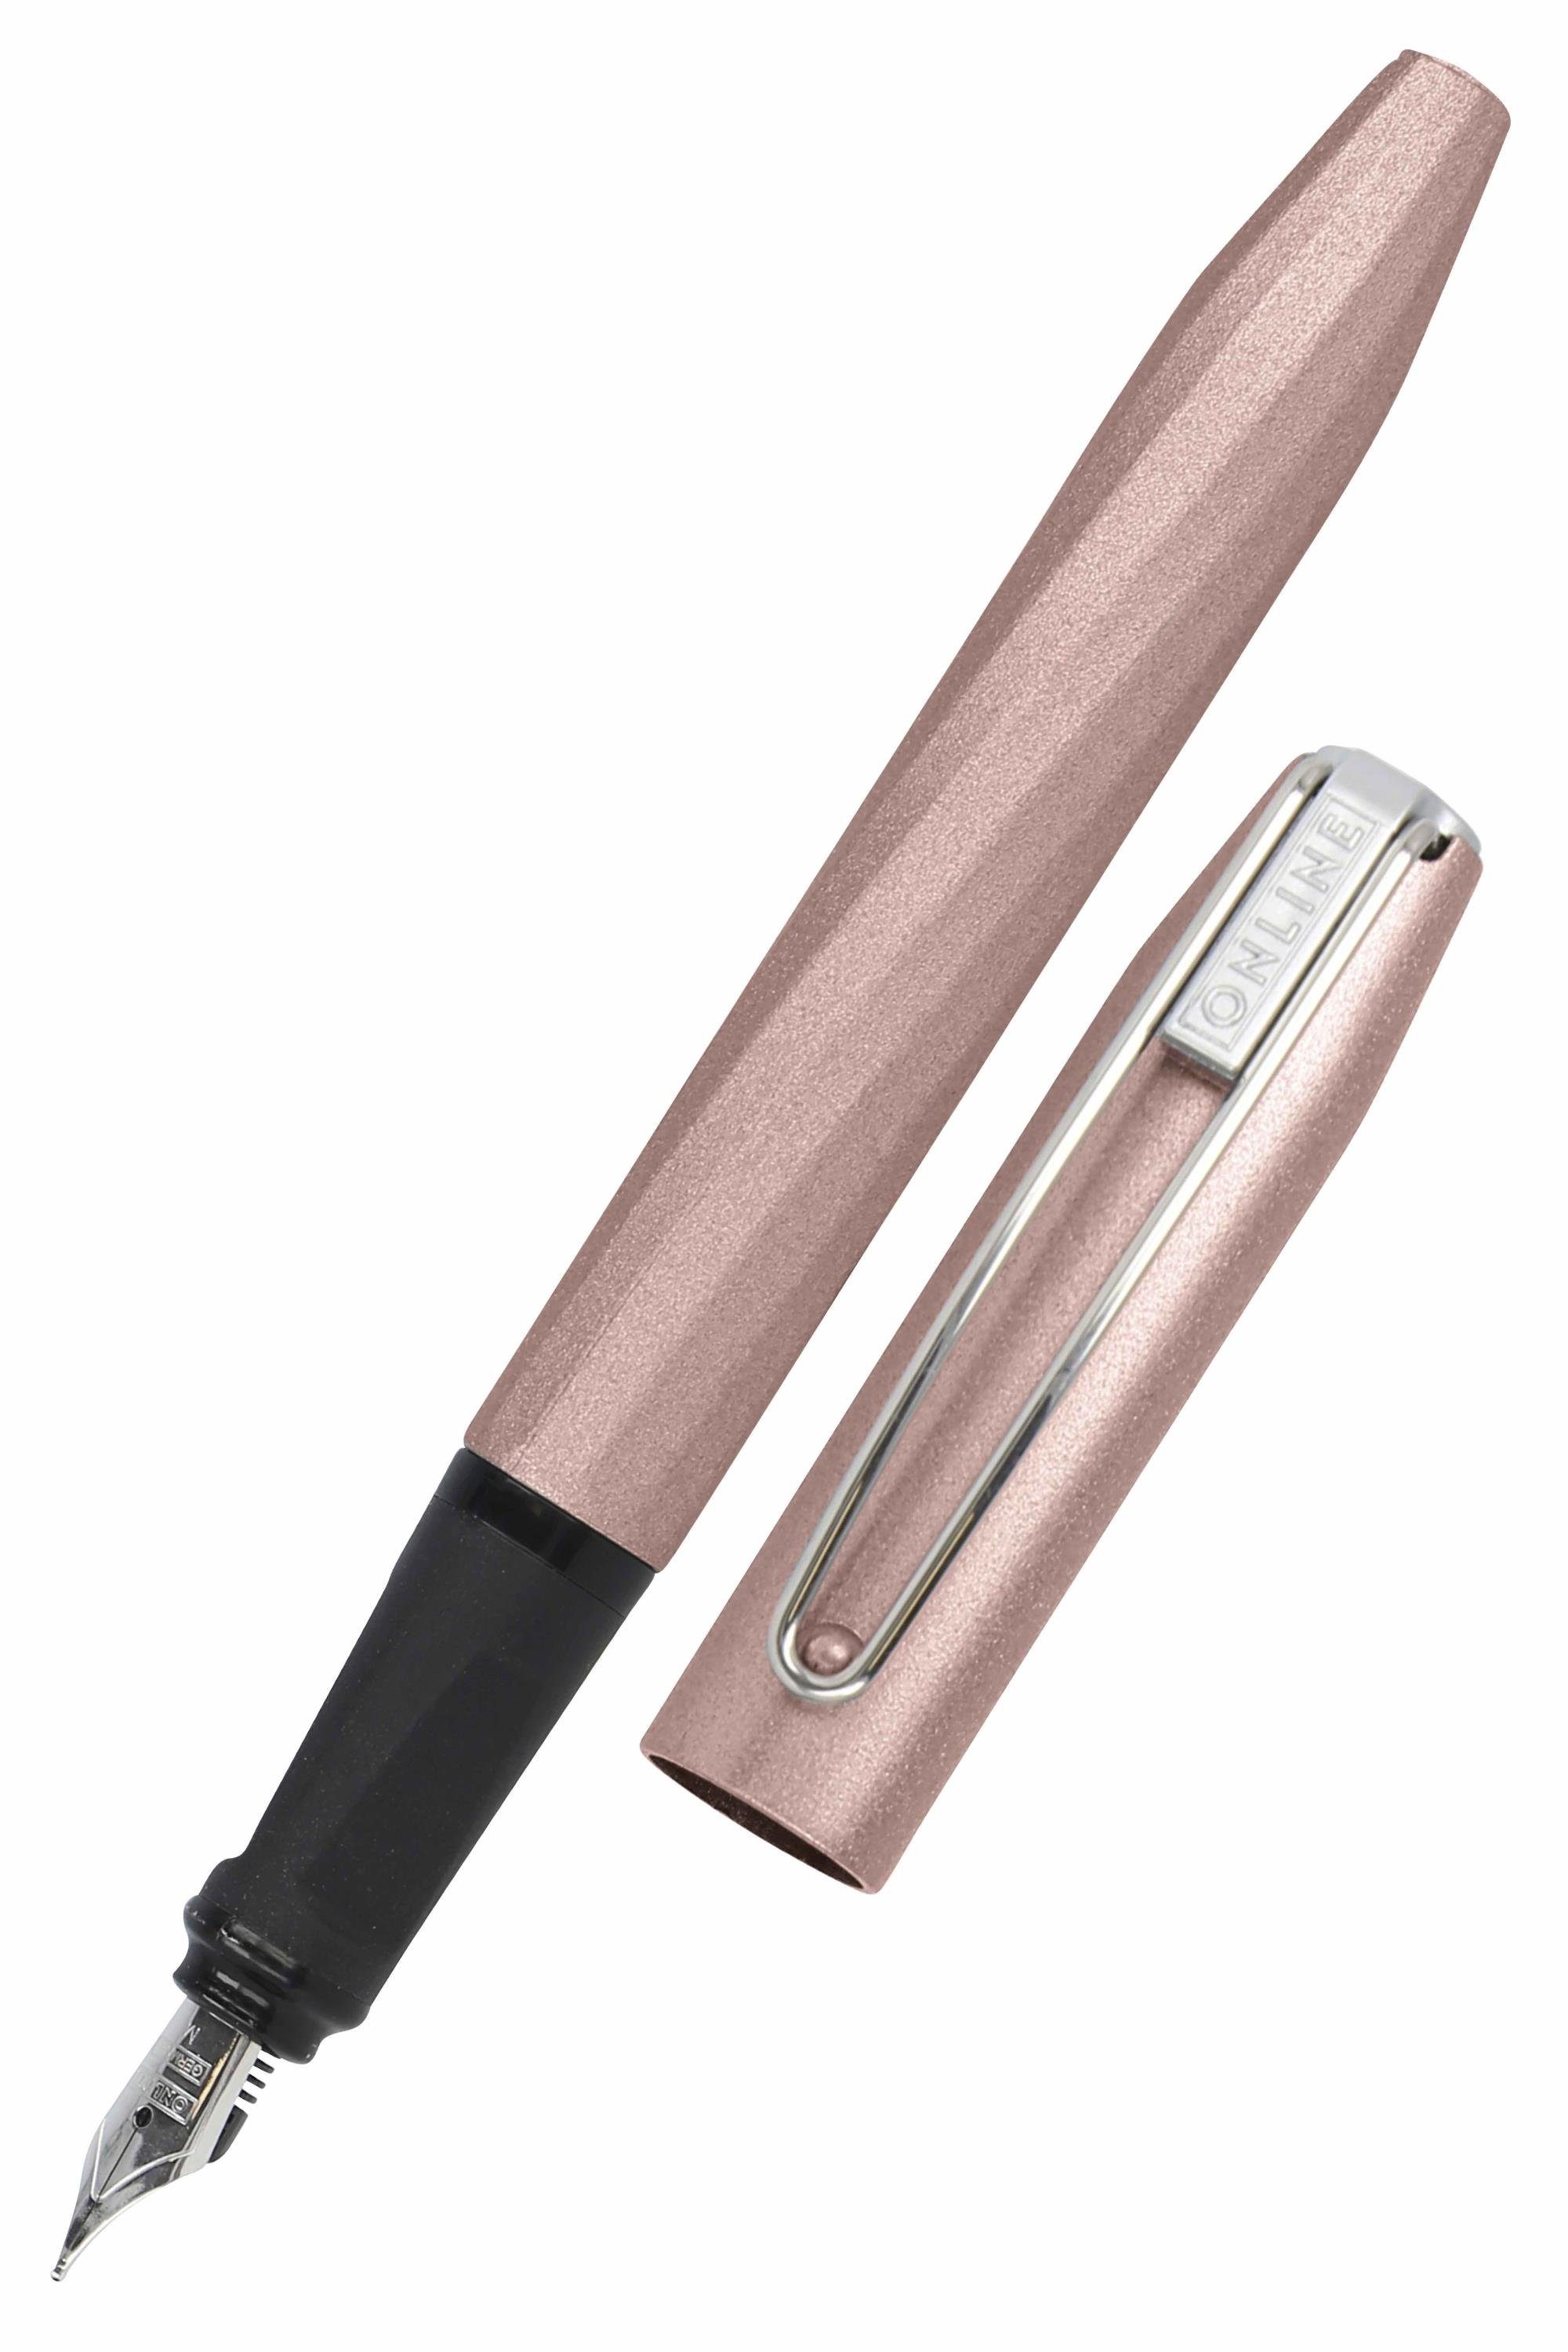 Online Pen Füller Slope, ergonomisch, ideal für die Schule, inkl. Tintenpatrone